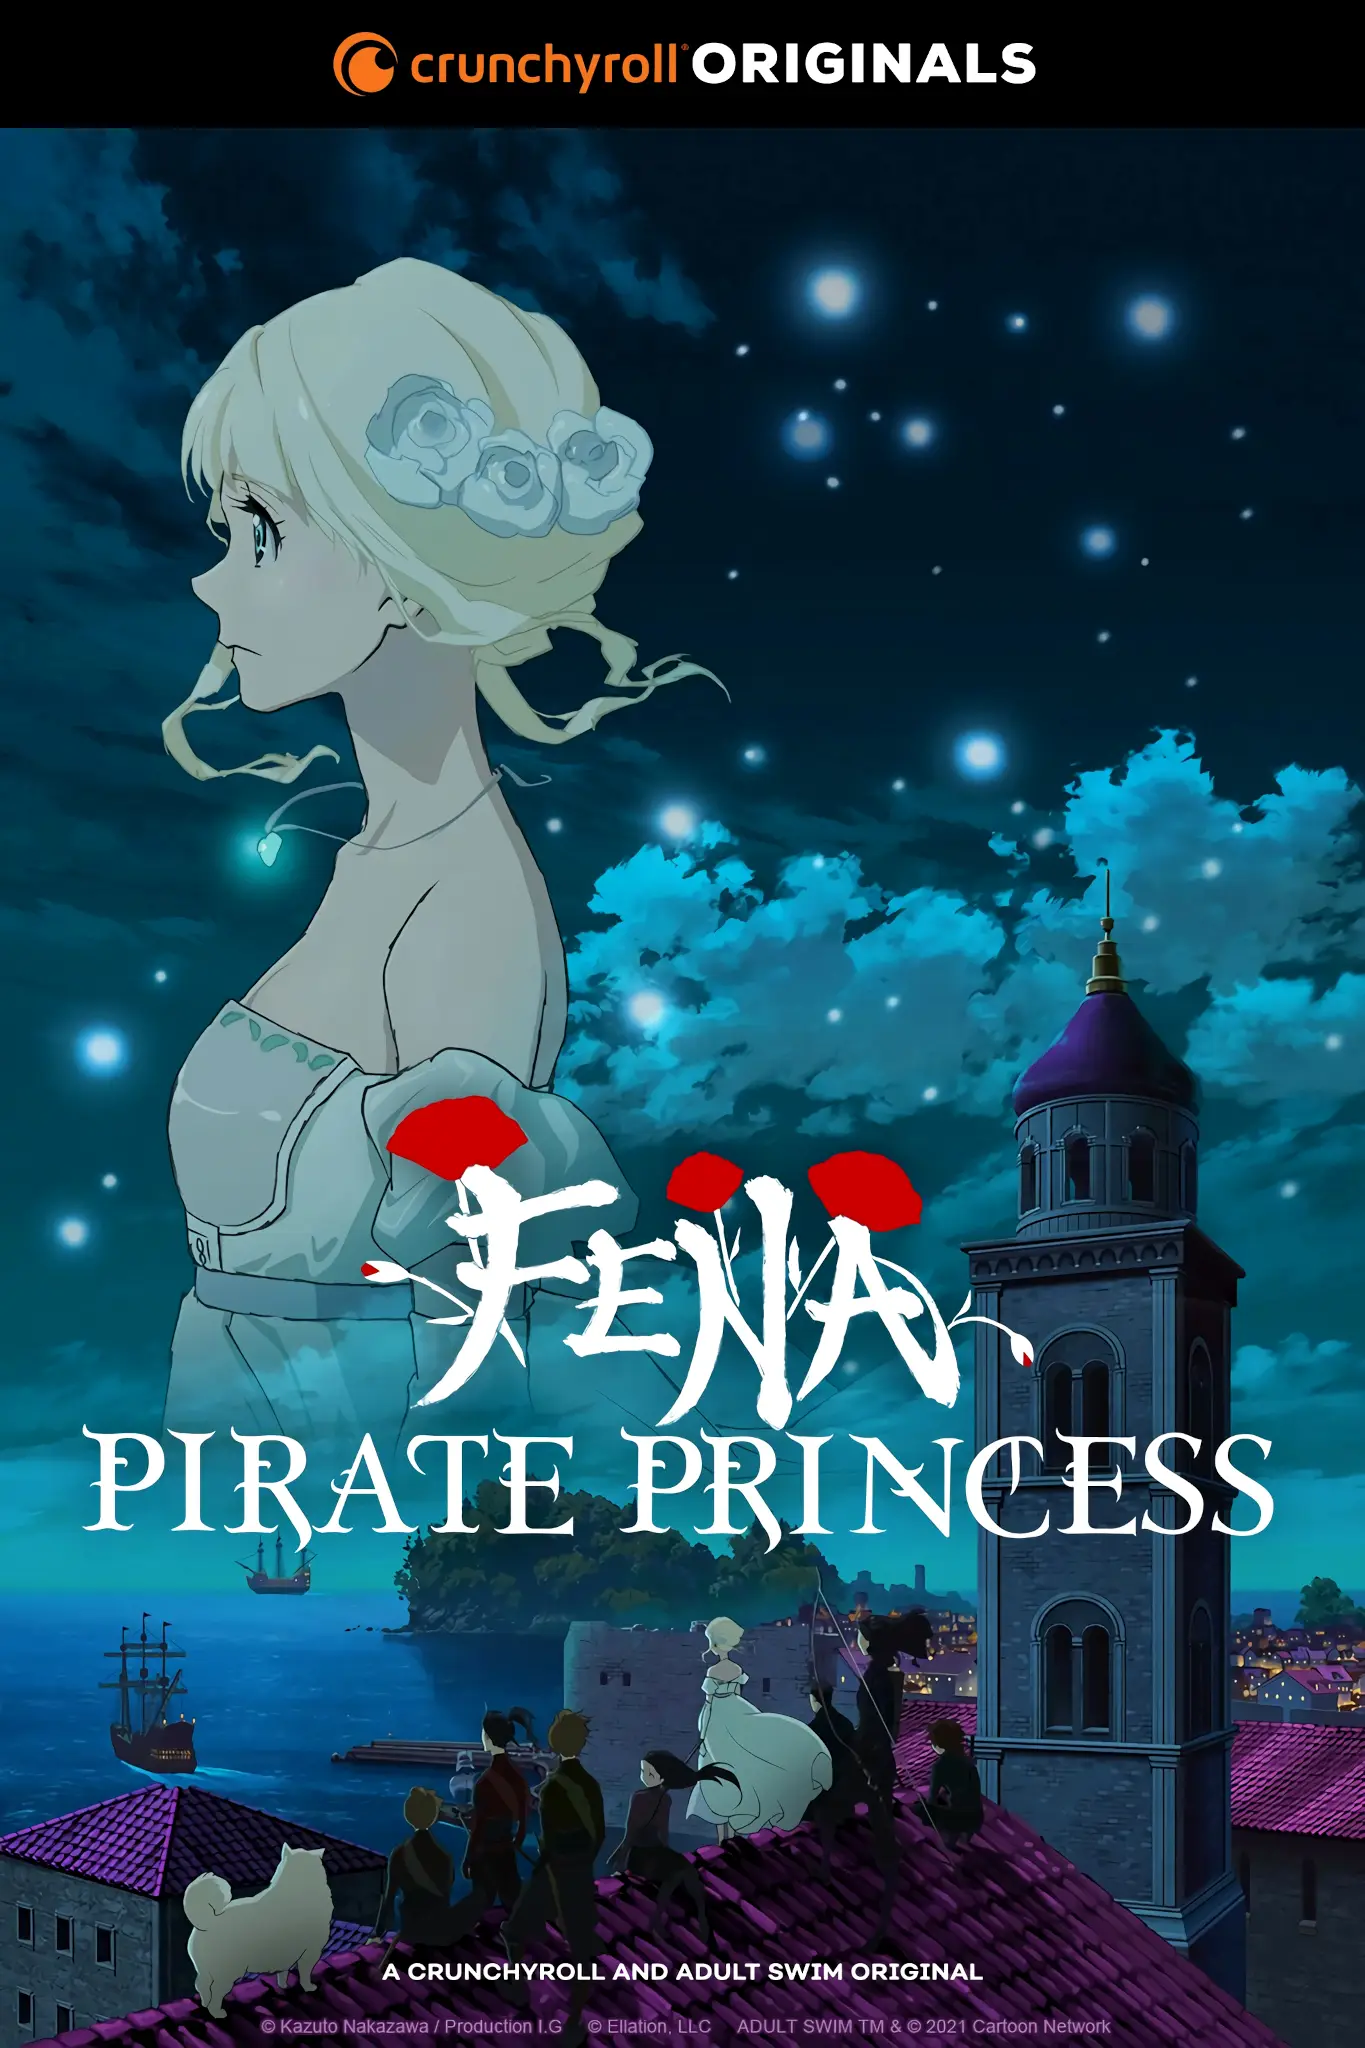 fena pirate princess trailer